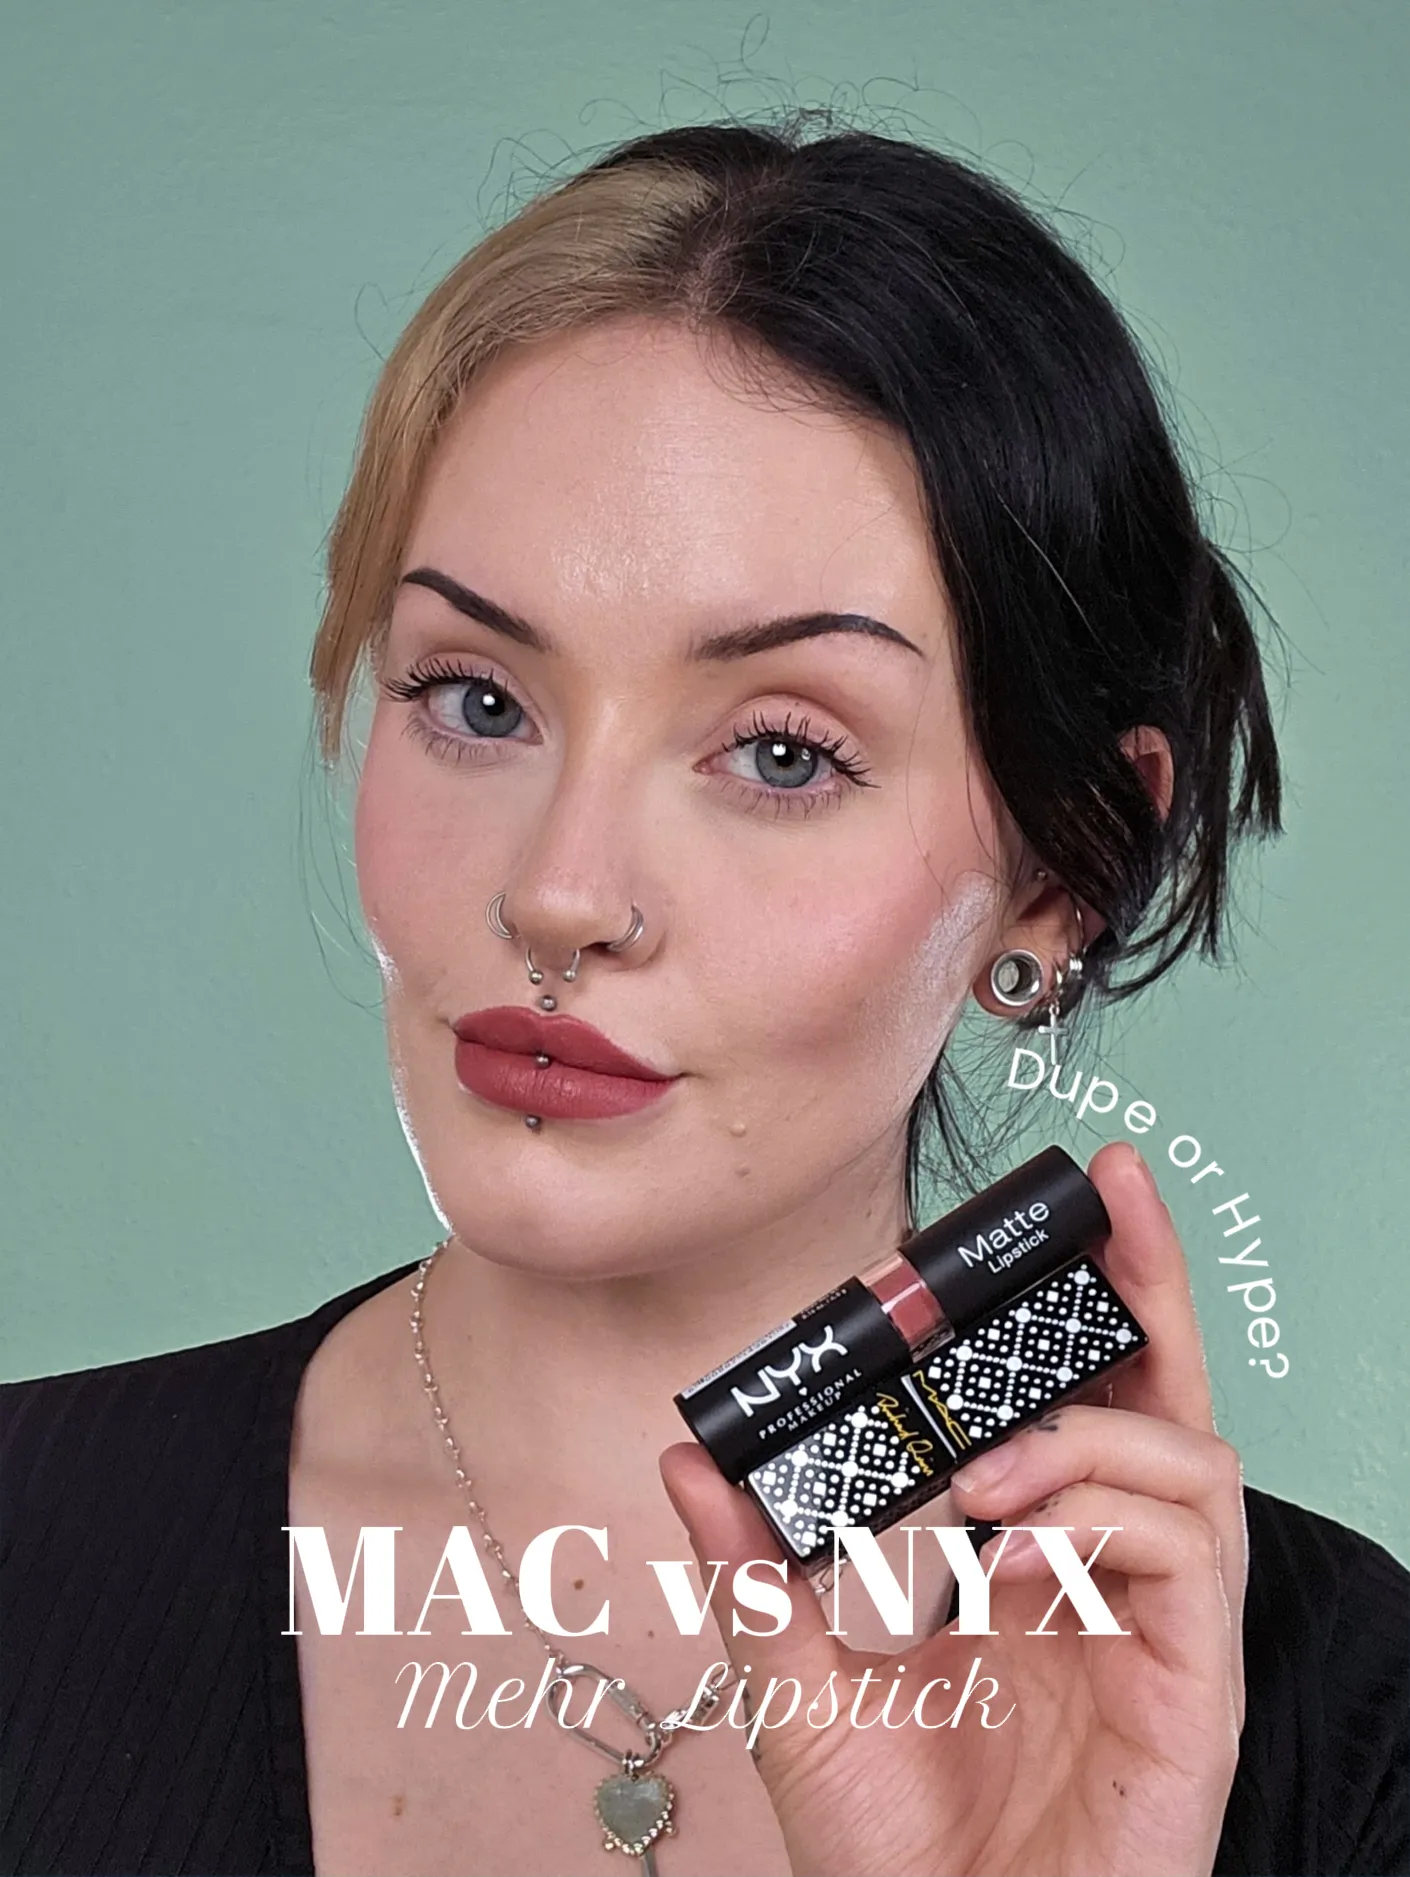  NYX PROFESSIONAL MAKEUP Lip Lingerie XXL Matte Liquid Lipstick  - Bust-Ed (Purple Mauve) : Beauty & Personal Care